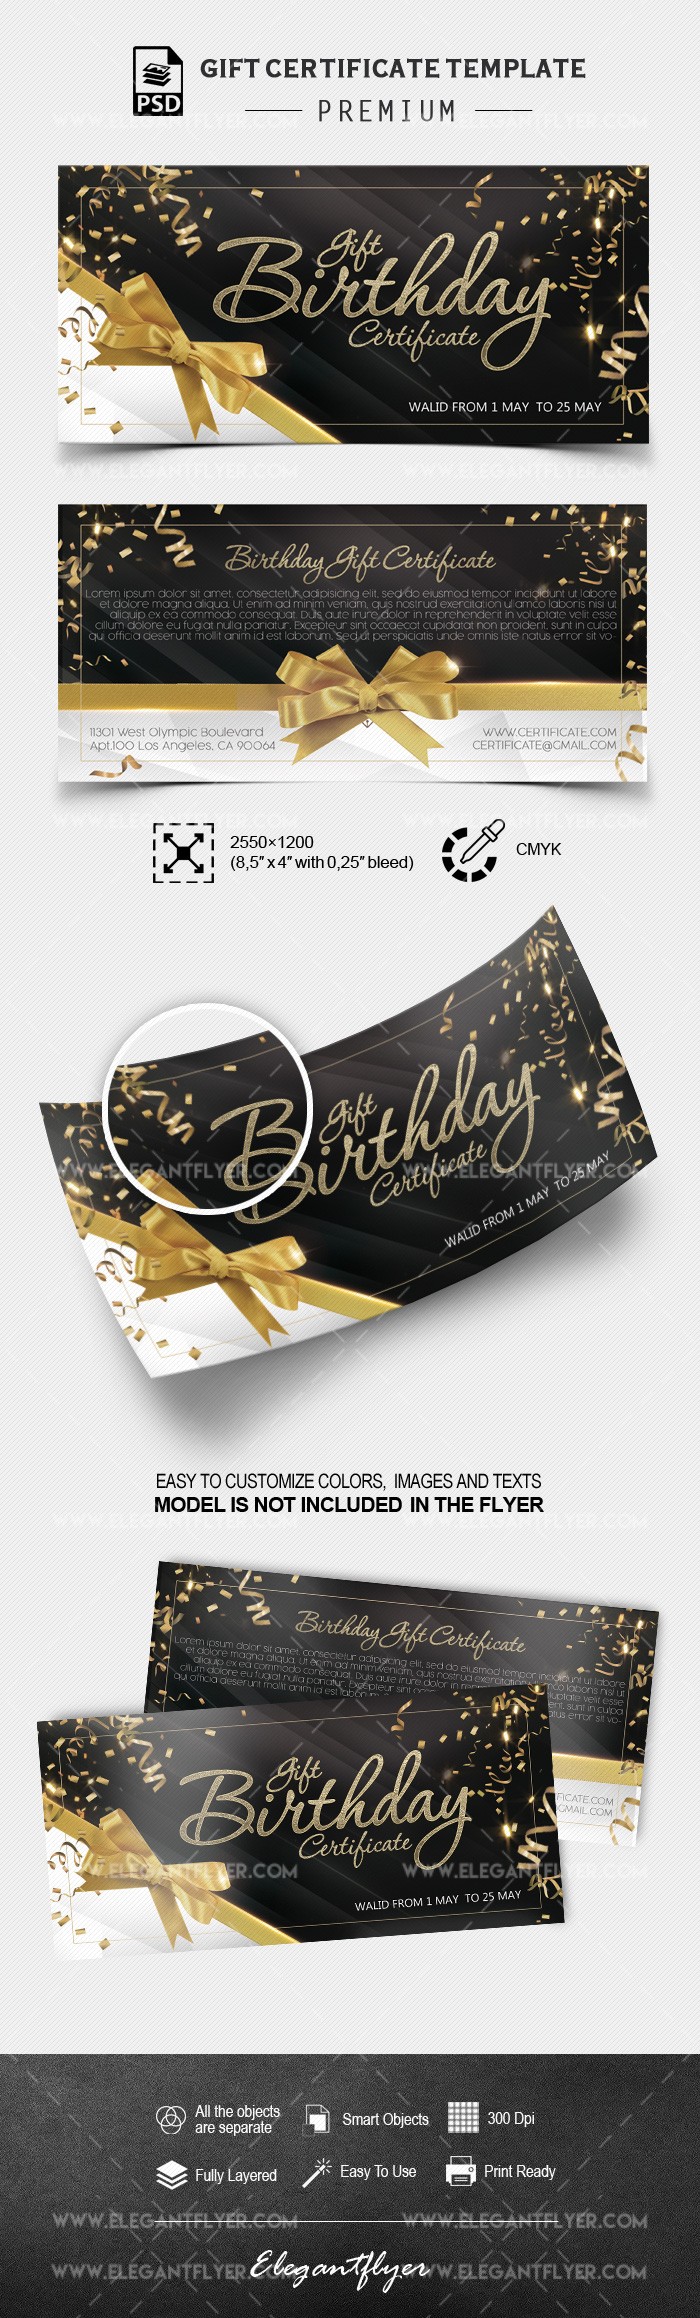 Certificado de regalo para cumpleaños by ElegantFlyer